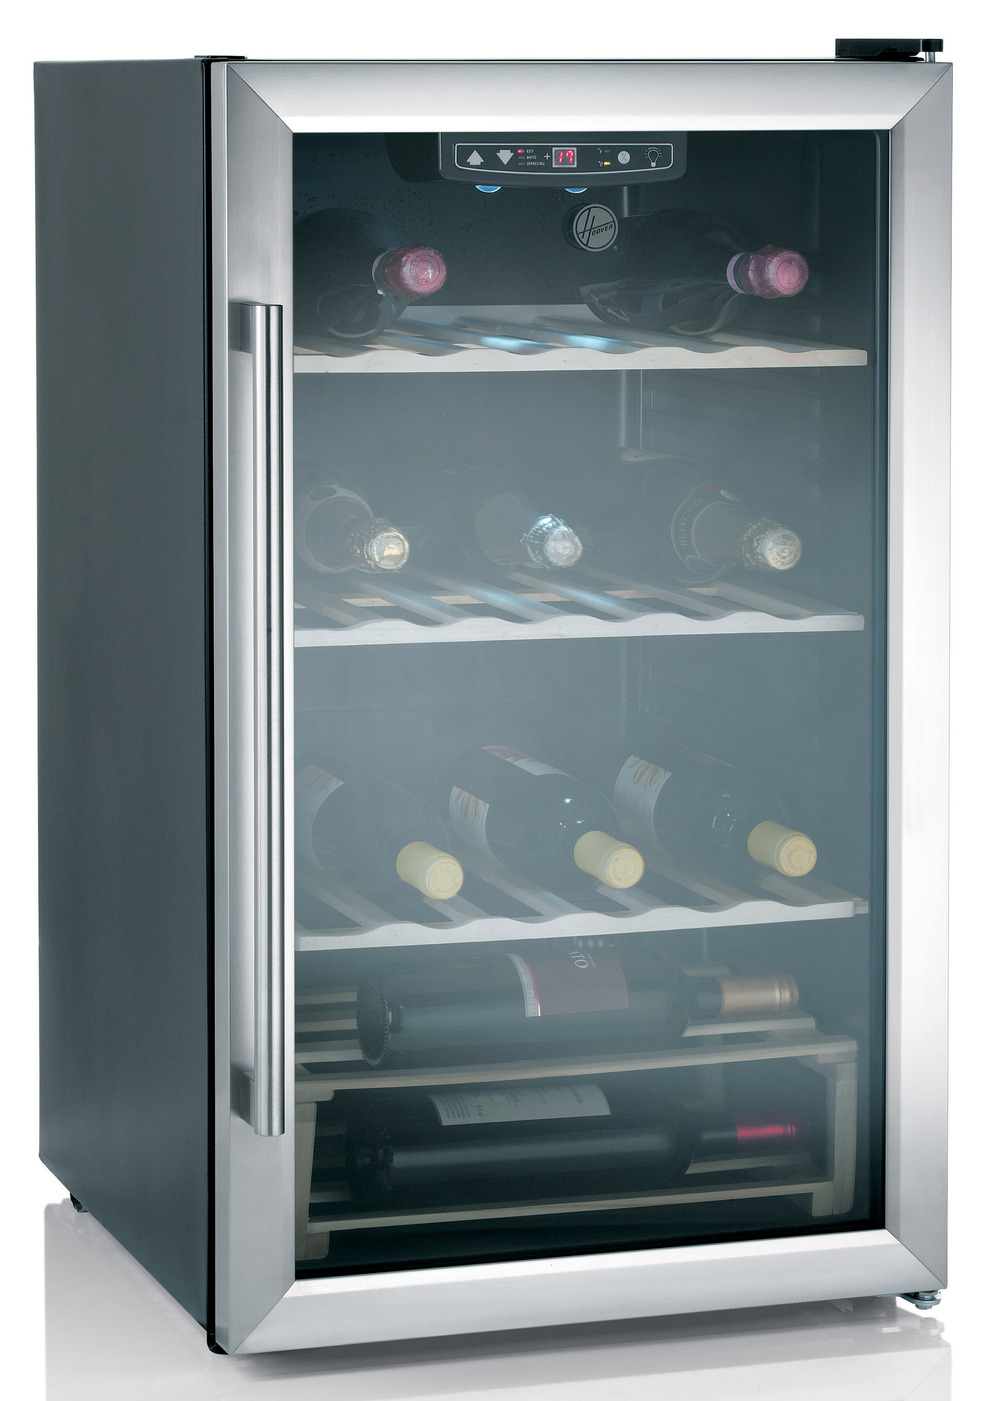 Hoover vinkøleskab - Gode & tilbud - Se udvalg her